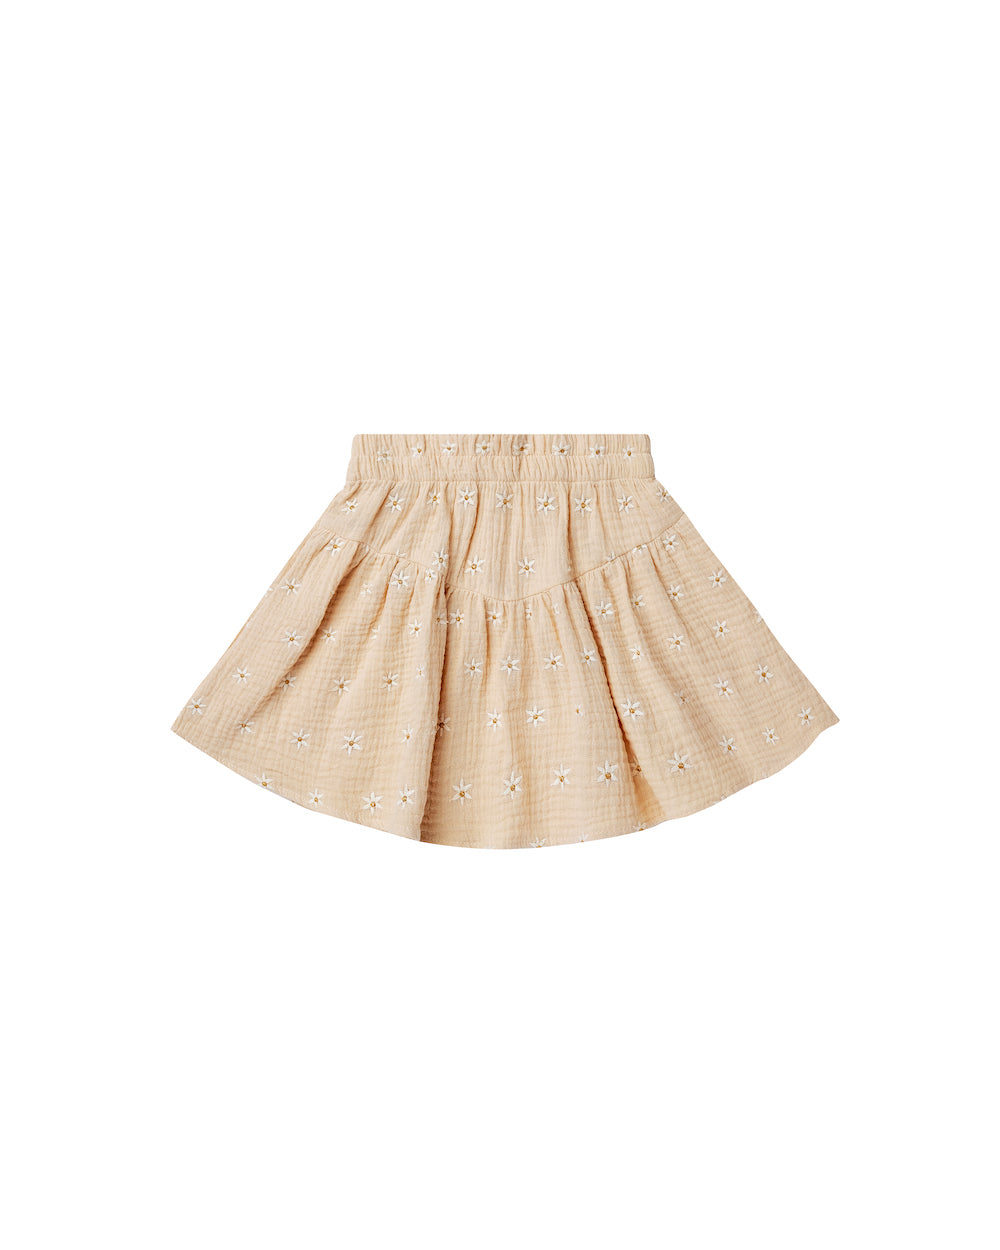 Rylee + Cru Sparrow Skirt - Daisy Embroidery